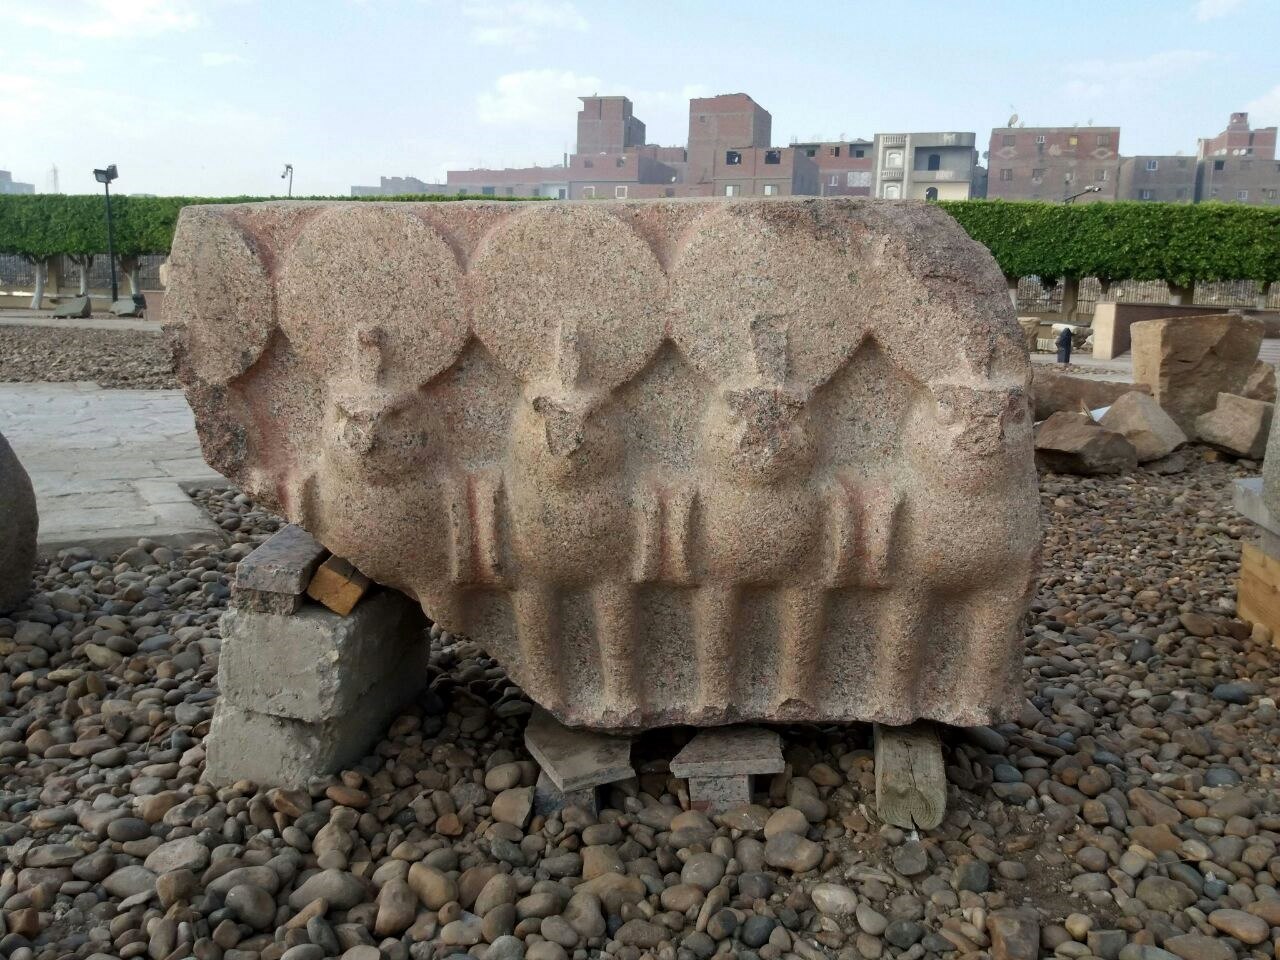 Descubren 4,500 nuevos fragmentos de una gran estatua del faraón Psamético I